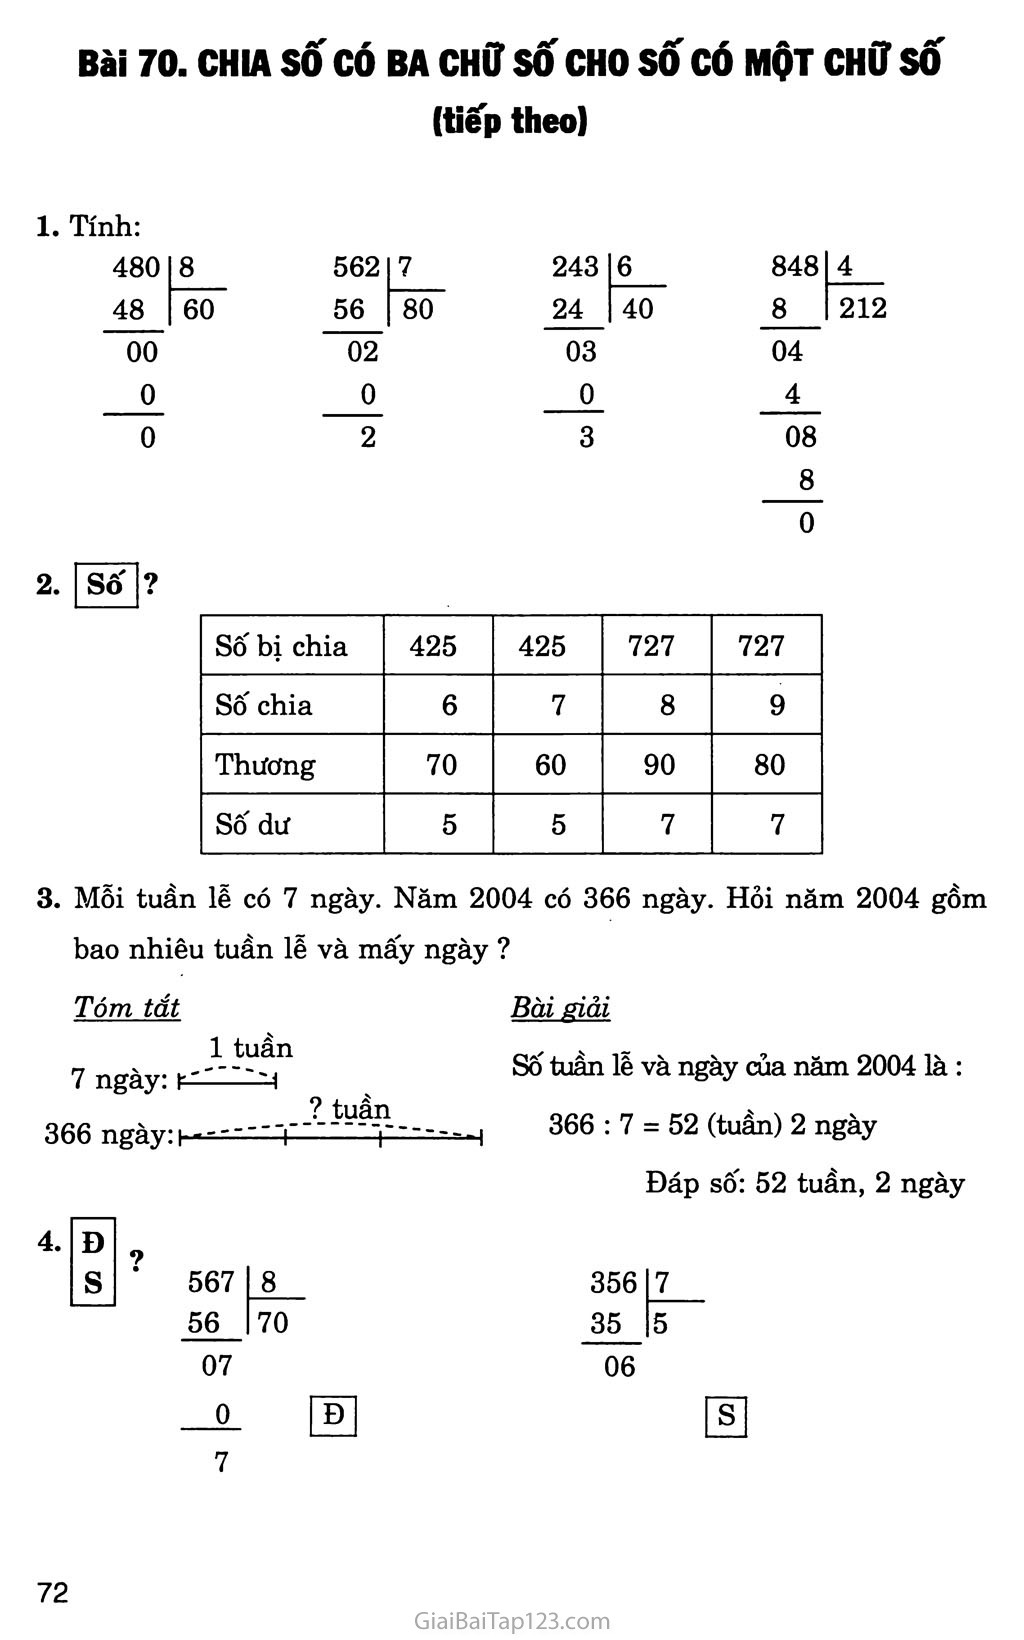 Bài 70: Chia số có ba chữ số cho số có một chữ số (tiếp theo) trang 1